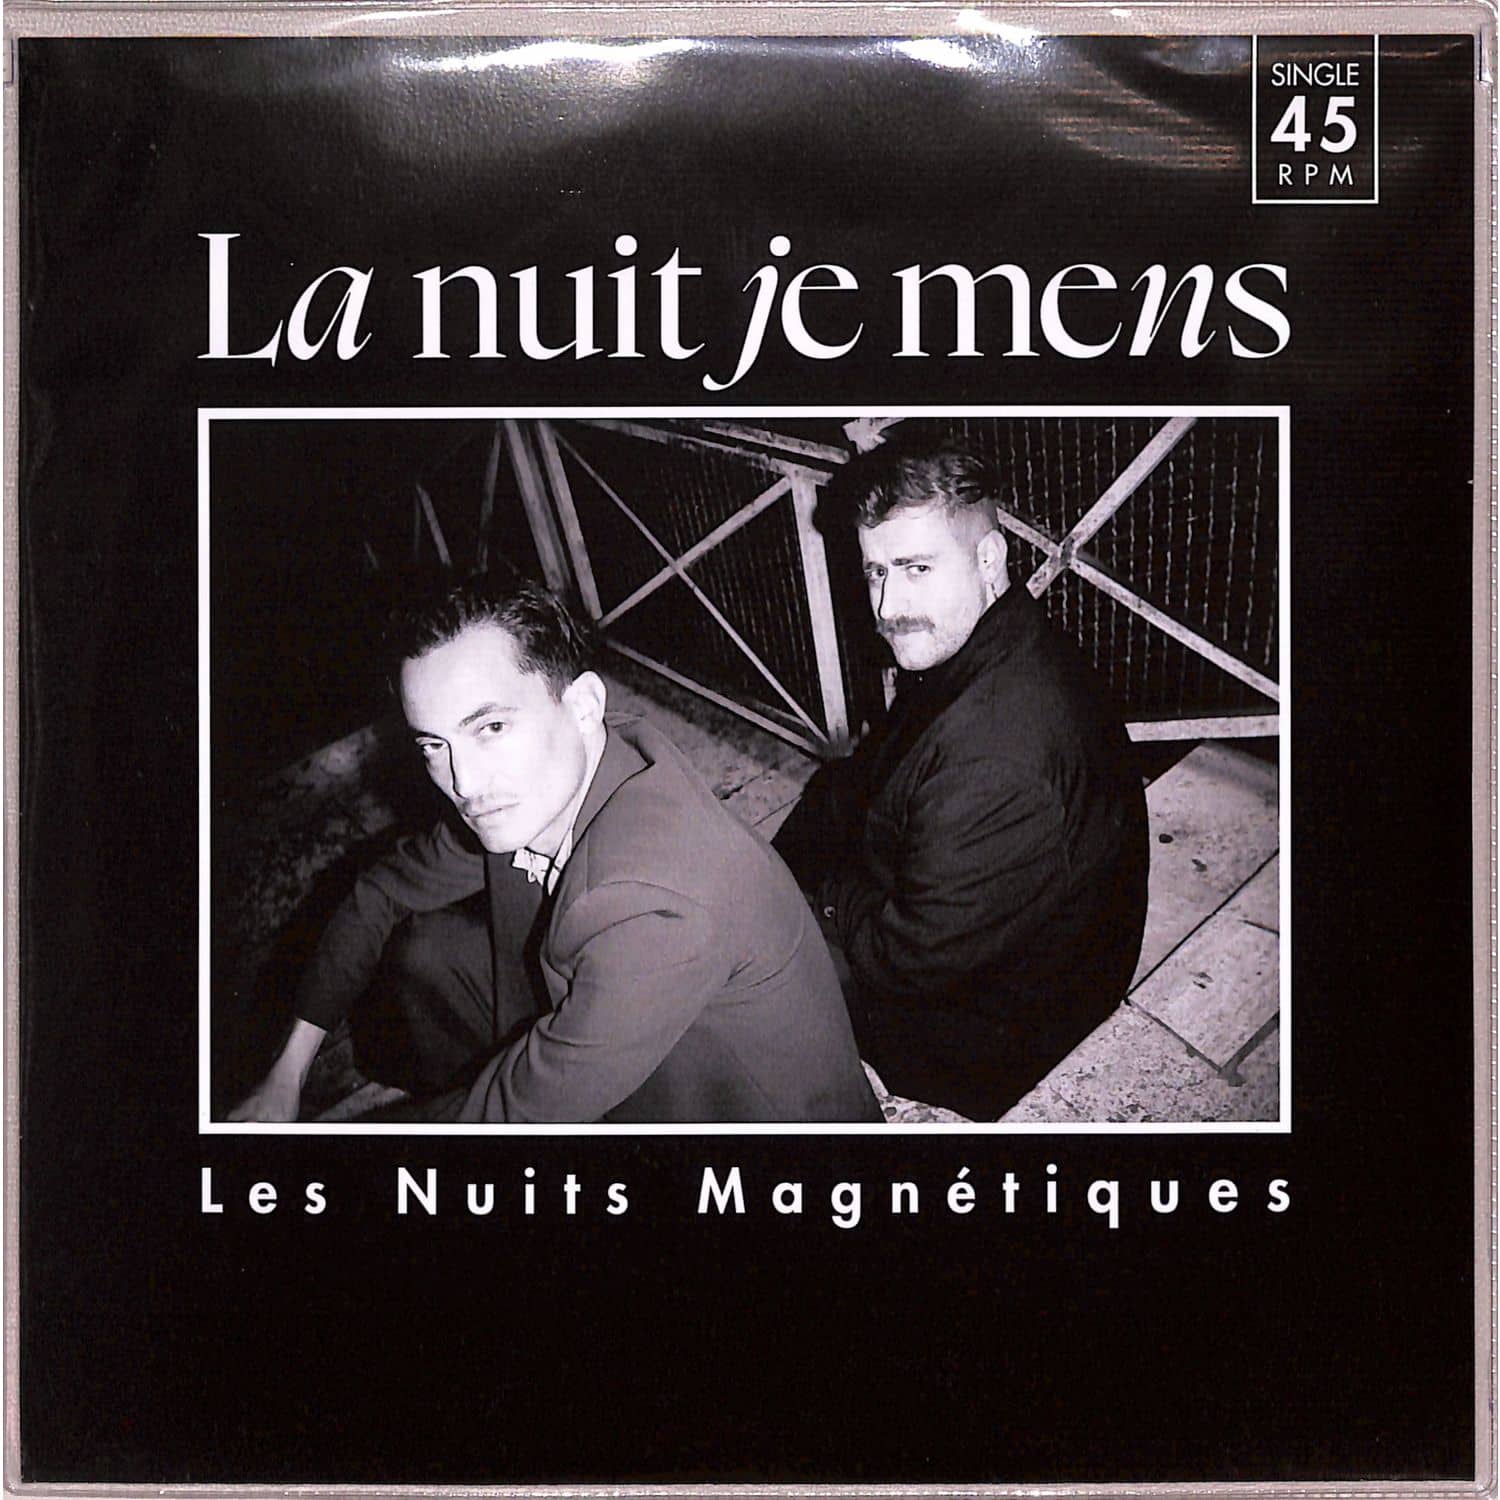 La Nuit Je Mens - LES NUITS MAGNETIQUES 